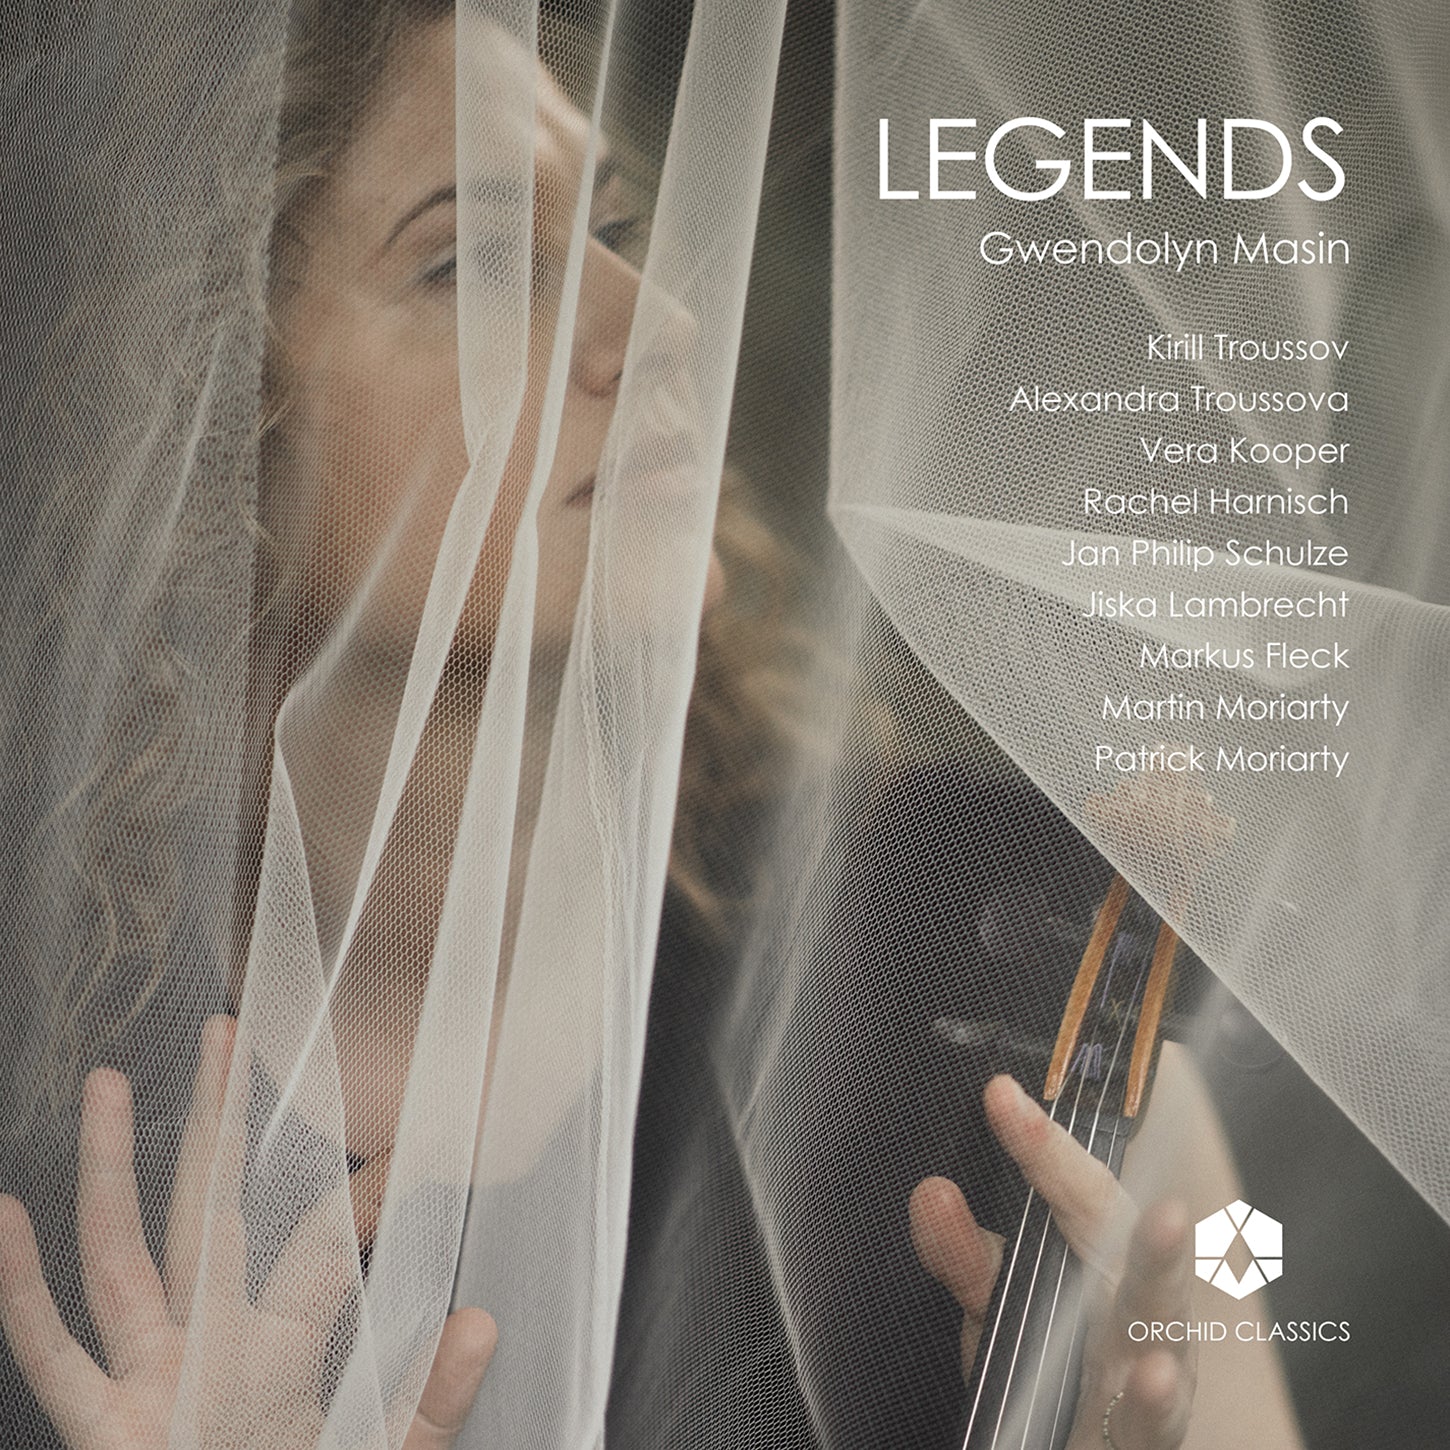 Enescu, I. Wieniawska, H. & J. Wieniawski & Ysaÿe: Legends / Masin